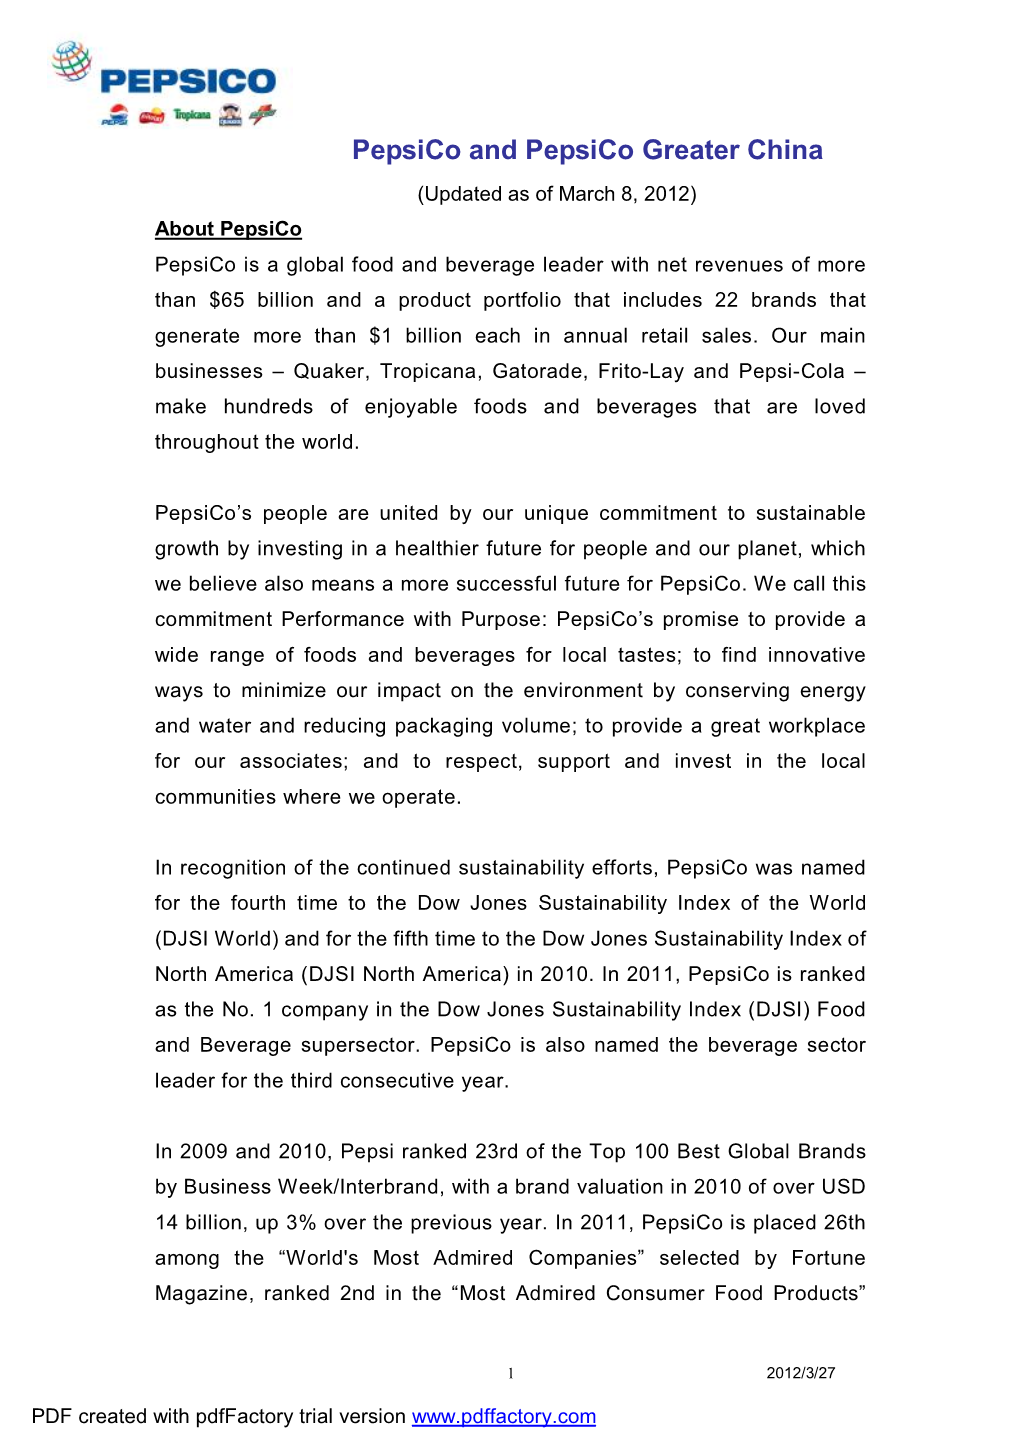 Pepsico GCR Profile March 8 2012-Eg.DOC